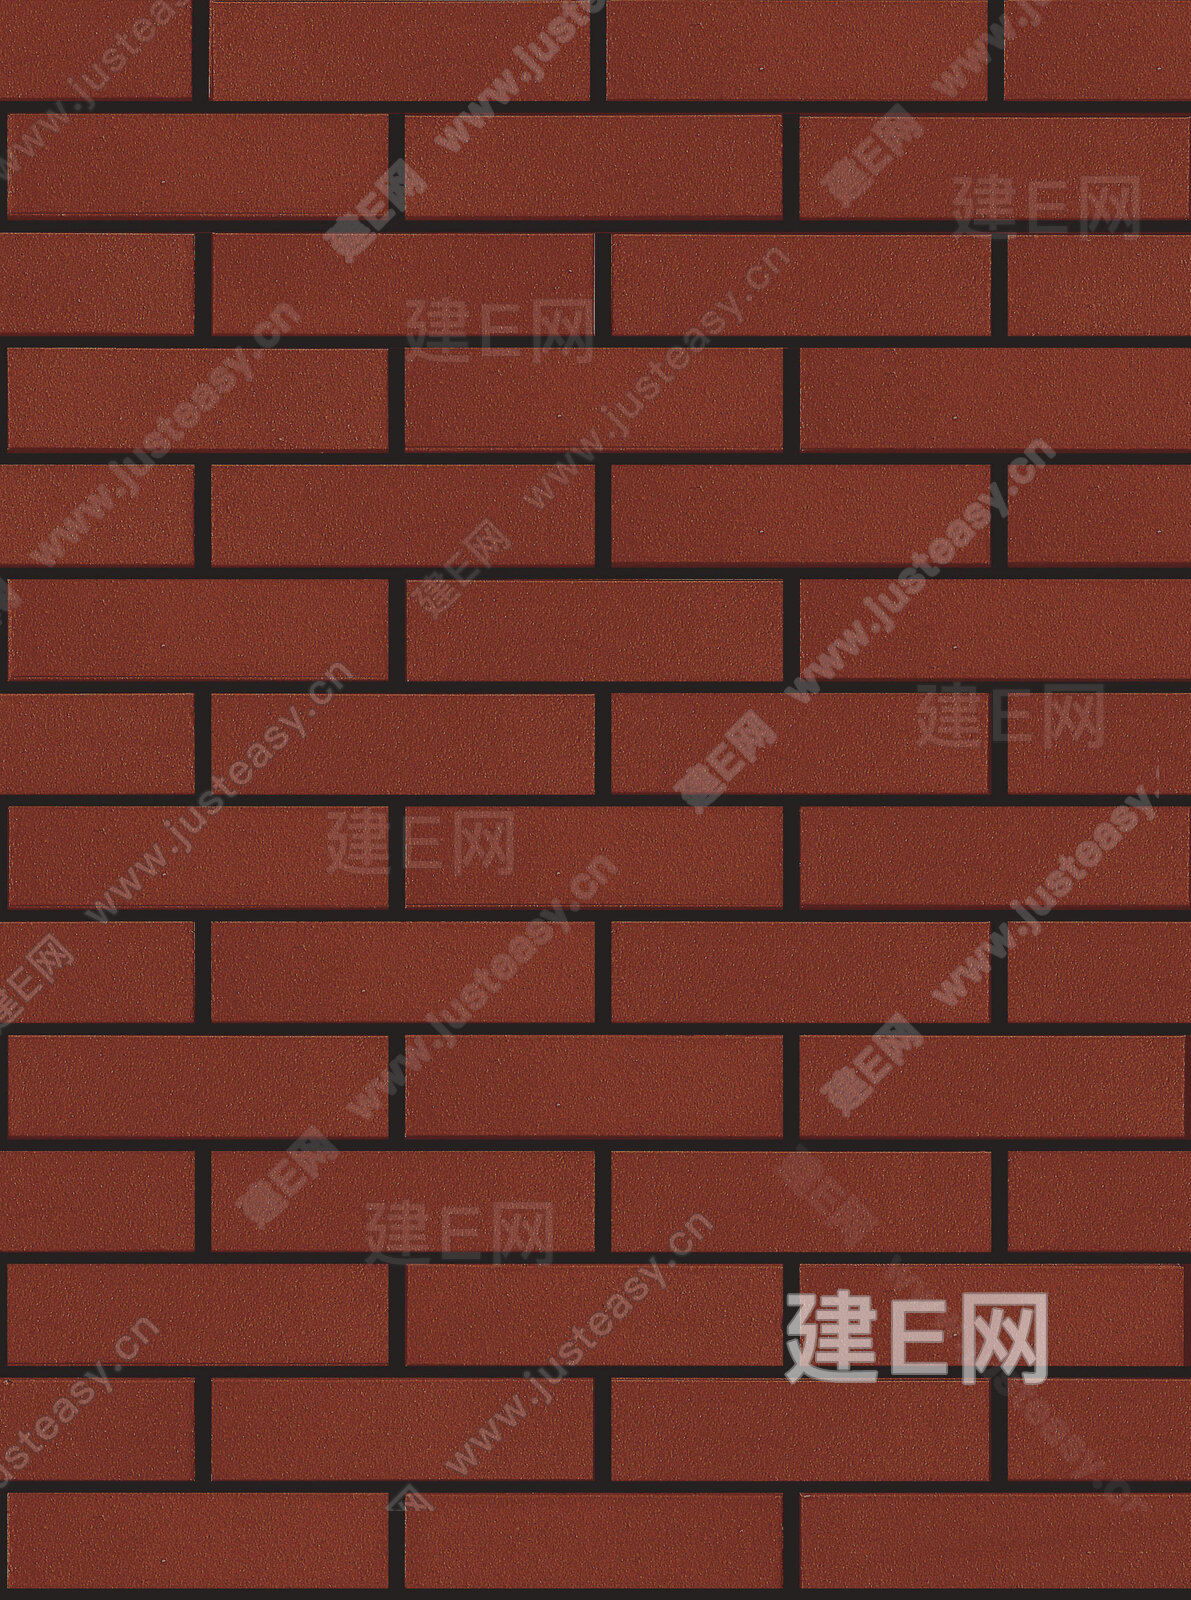 【3D贴图】红砖墙-3d材质贴图下载_贴图素材_3d贴图网 - 建E网3dmax材质库